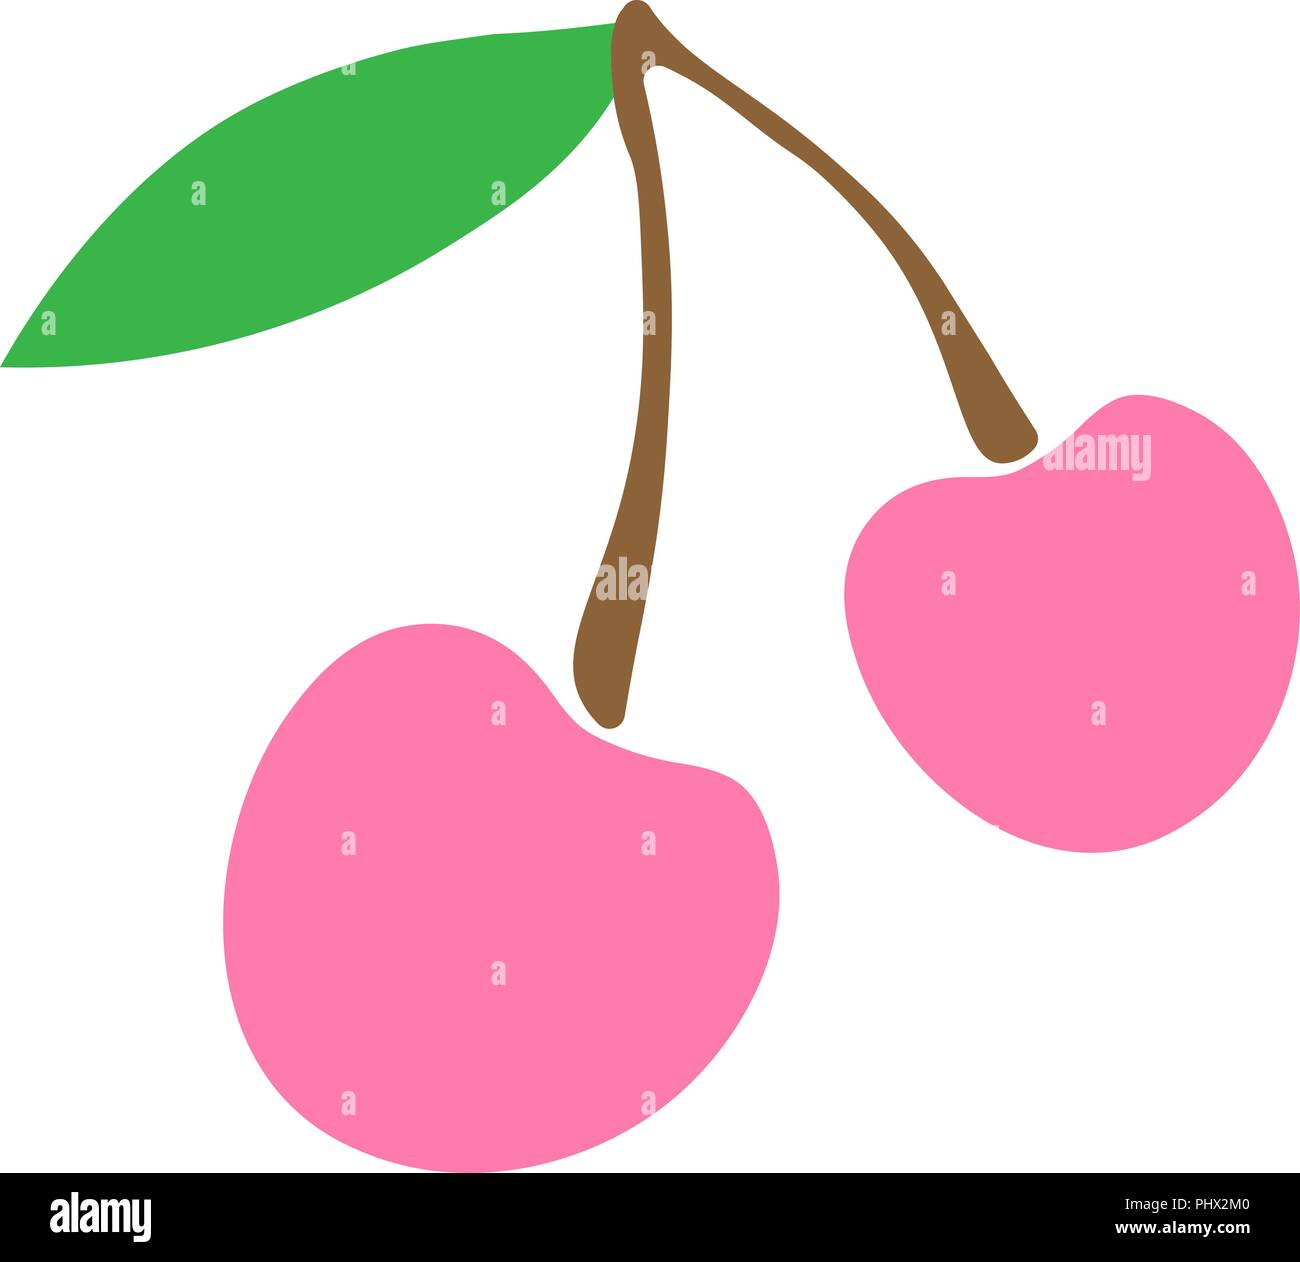 Illustrazione Vettoriale Ciliegie Rosa Logo O Di Un Adesivo Per Bambini Semplice Disegno Di Frutta E Bacche Di Rosa Immagine E Vettoriale Alamy